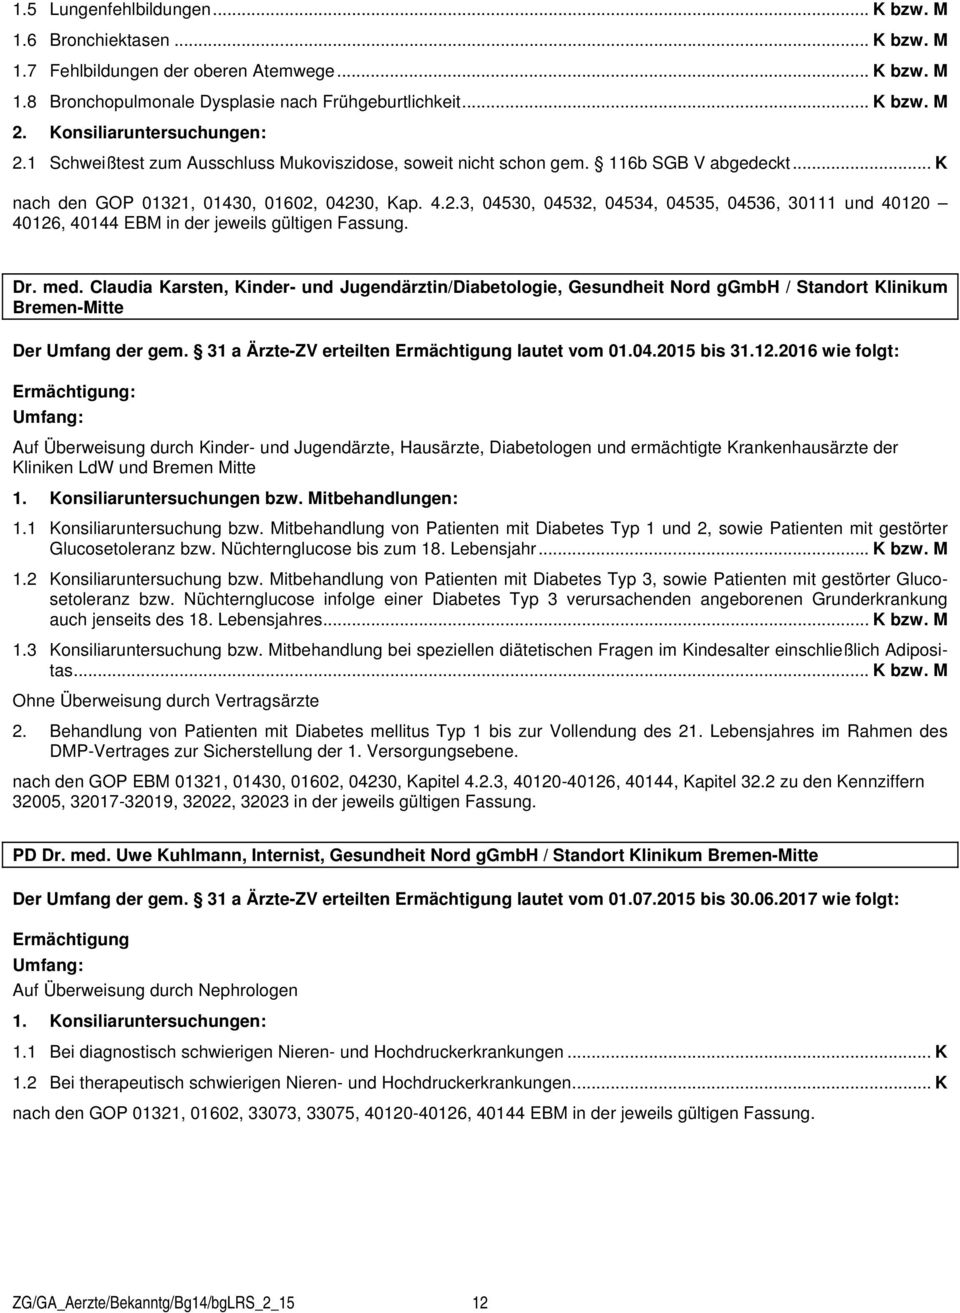 Dr. med. Claudia Karsten, Kinder- und Jugendärztin/Diabetologie, Gesundheit Nord ggmbh / Standort Klinikum Bremen-Mitte Der Umfang der gem. 31 a Ärzte-ZV erteilten lautet vom 01.04.2015 bis 31.12.